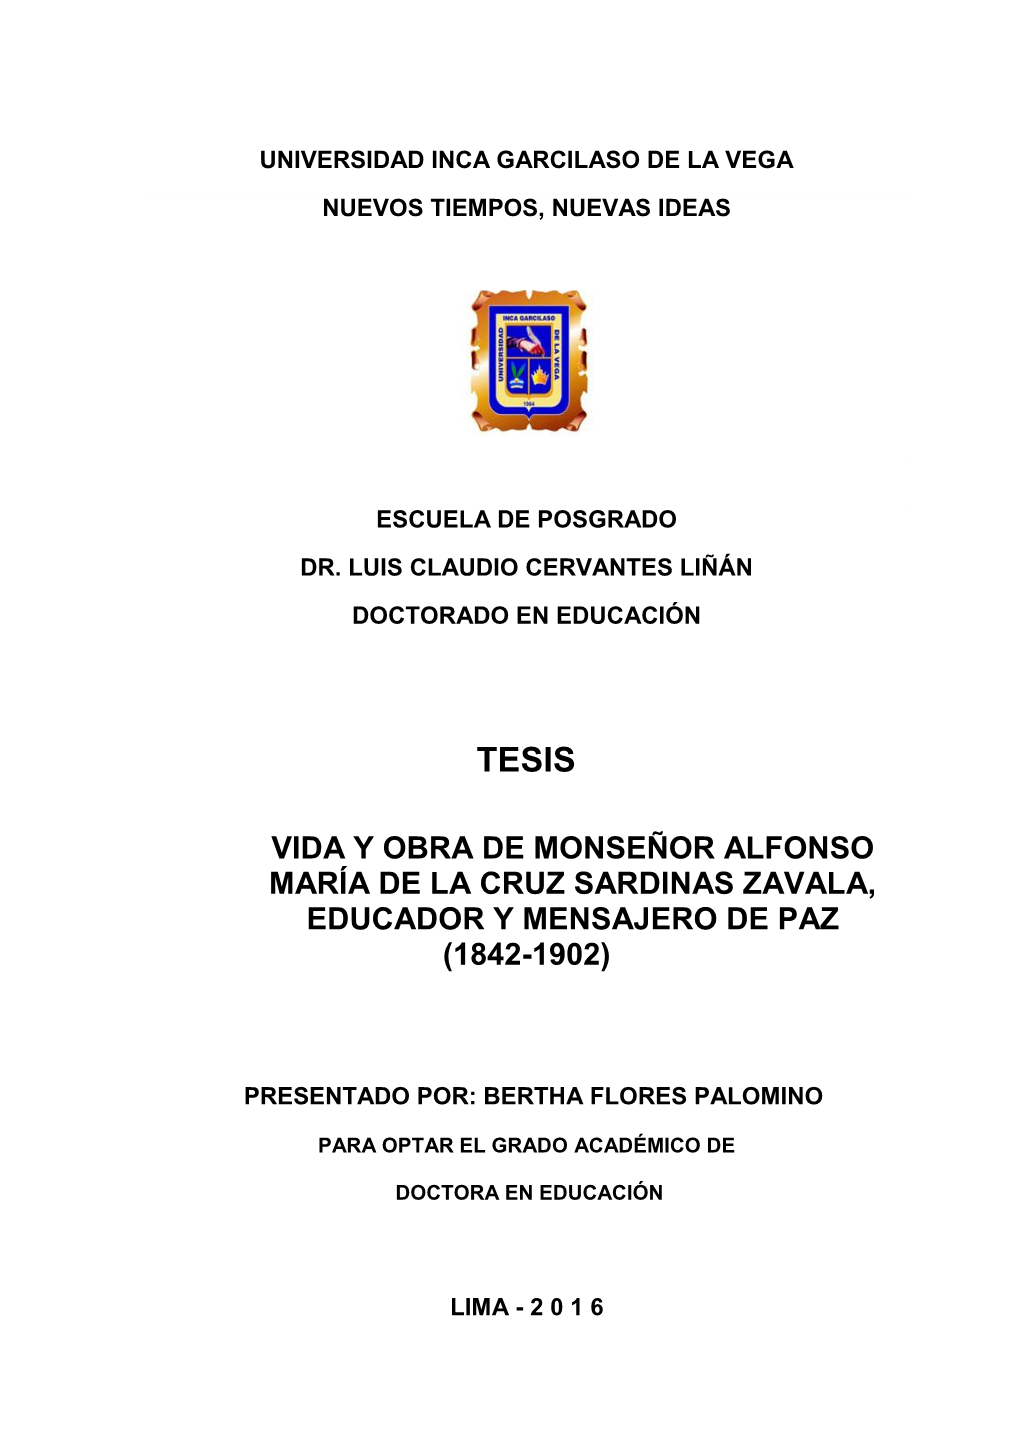 Vida Y Obra De Monseñor Alfonso María De La Cruz Sardinas Zavala, Educador Y Mensajero De Paz (1842-1902)